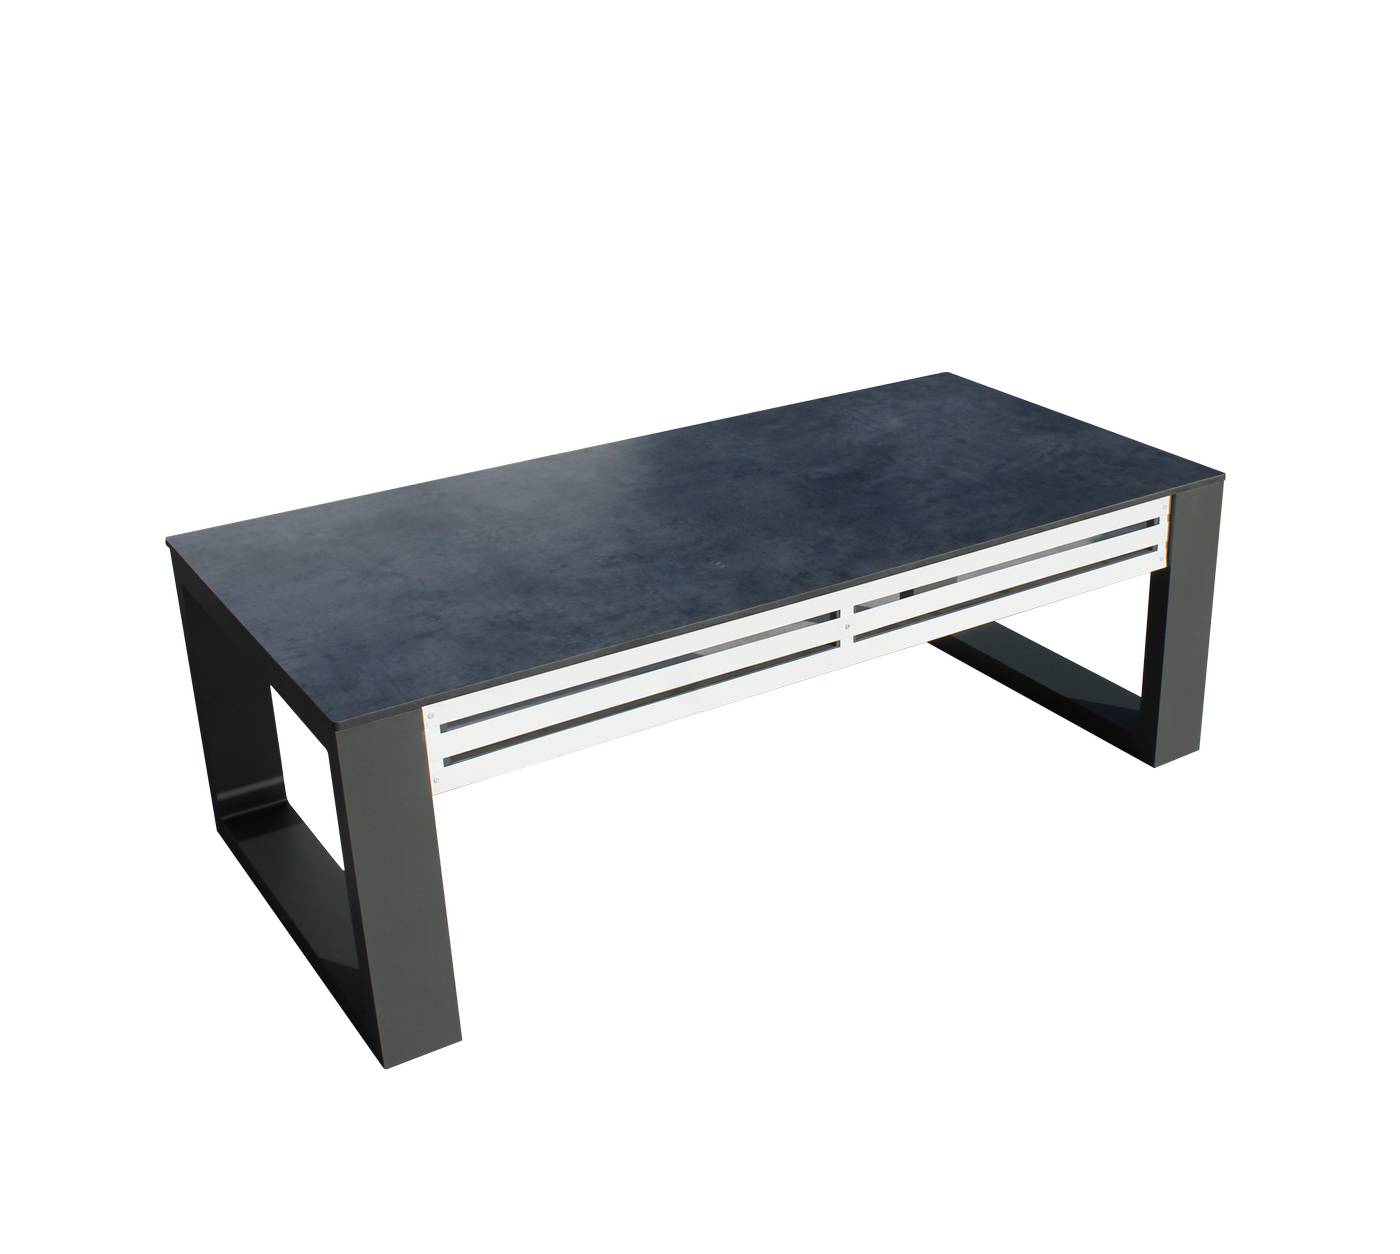 Exclusiva mesa de centro rectangular de aluminio bicolor con tablero HPL de 120 cm.